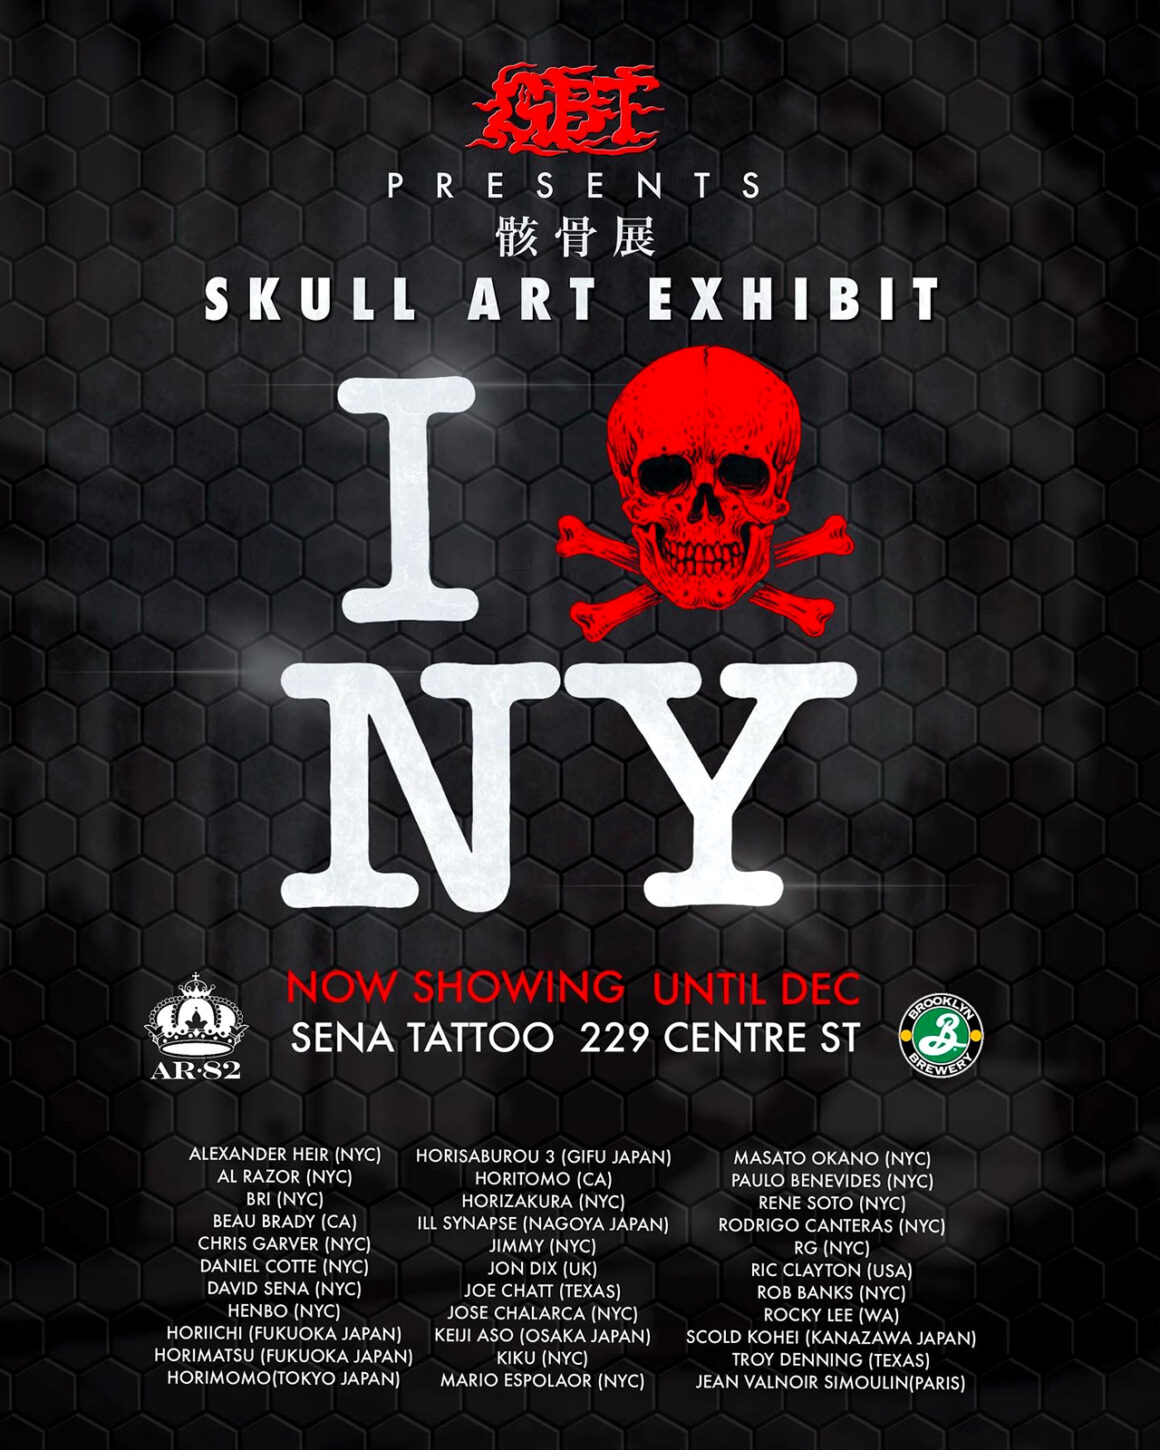 Skull Art Exhibition